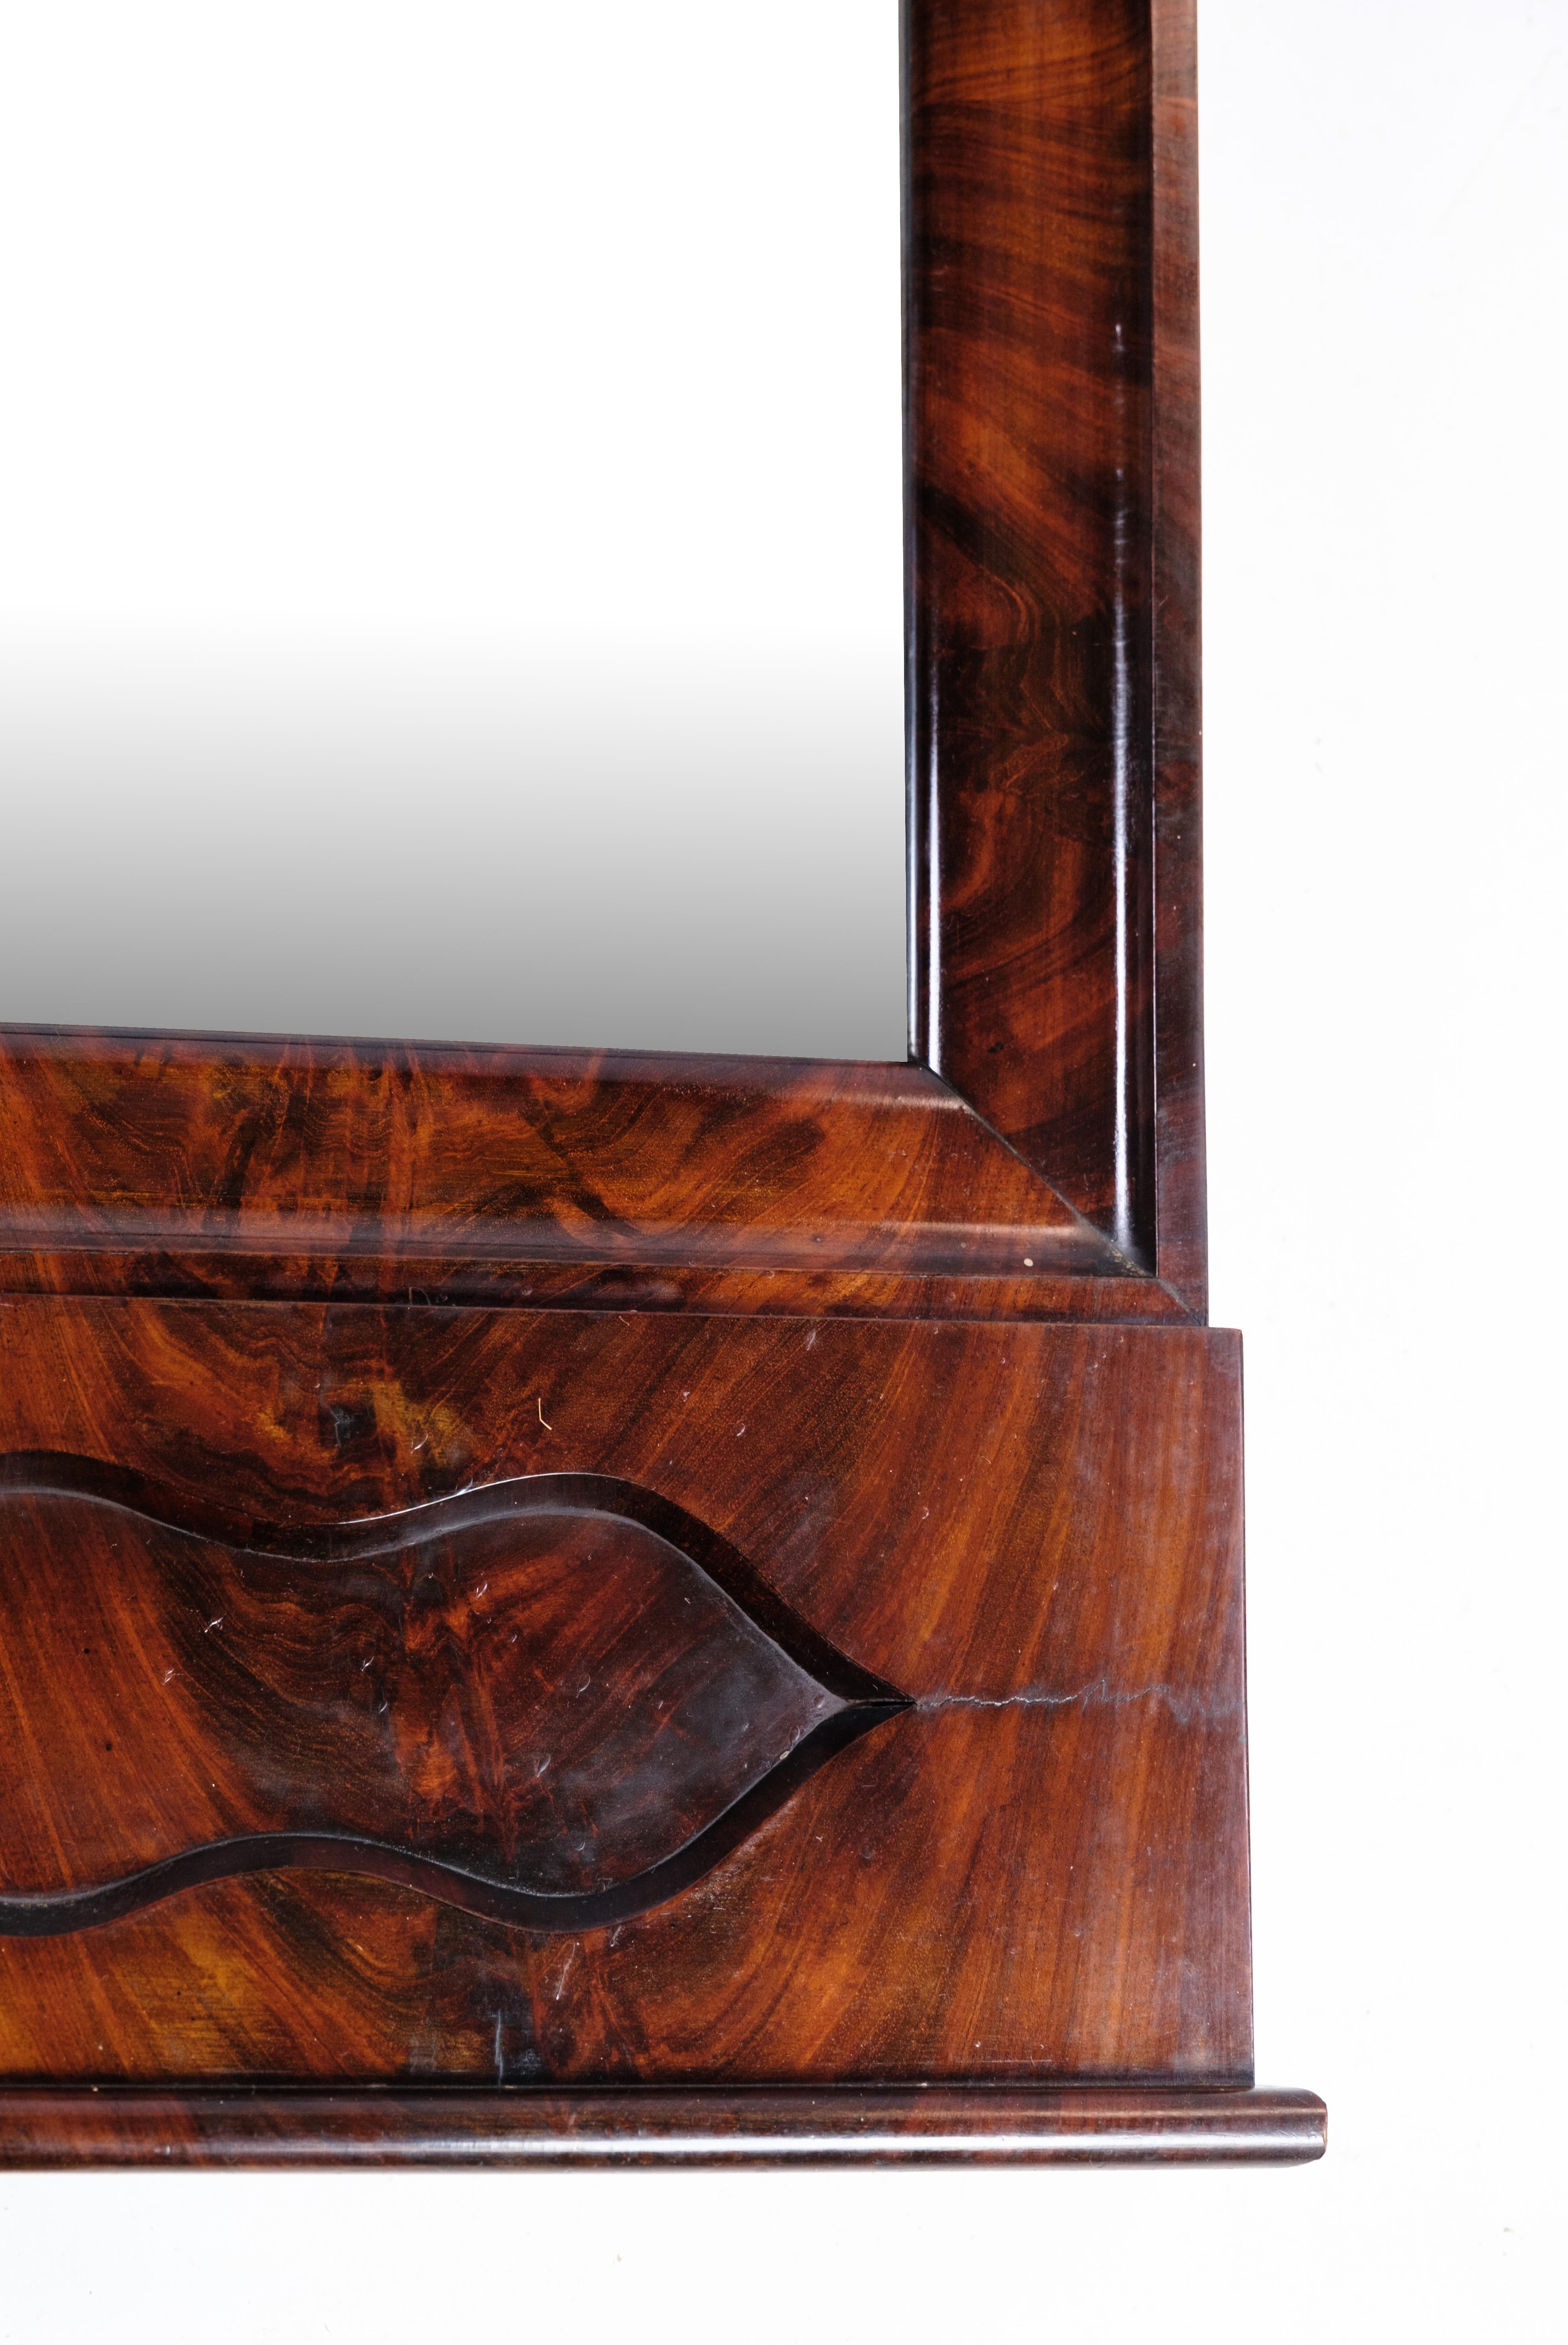 Miroir ancien en bois d'acajou de la fin de la période Empire, vers les années 1840.
Dimensions en cm : H:152 L:67.